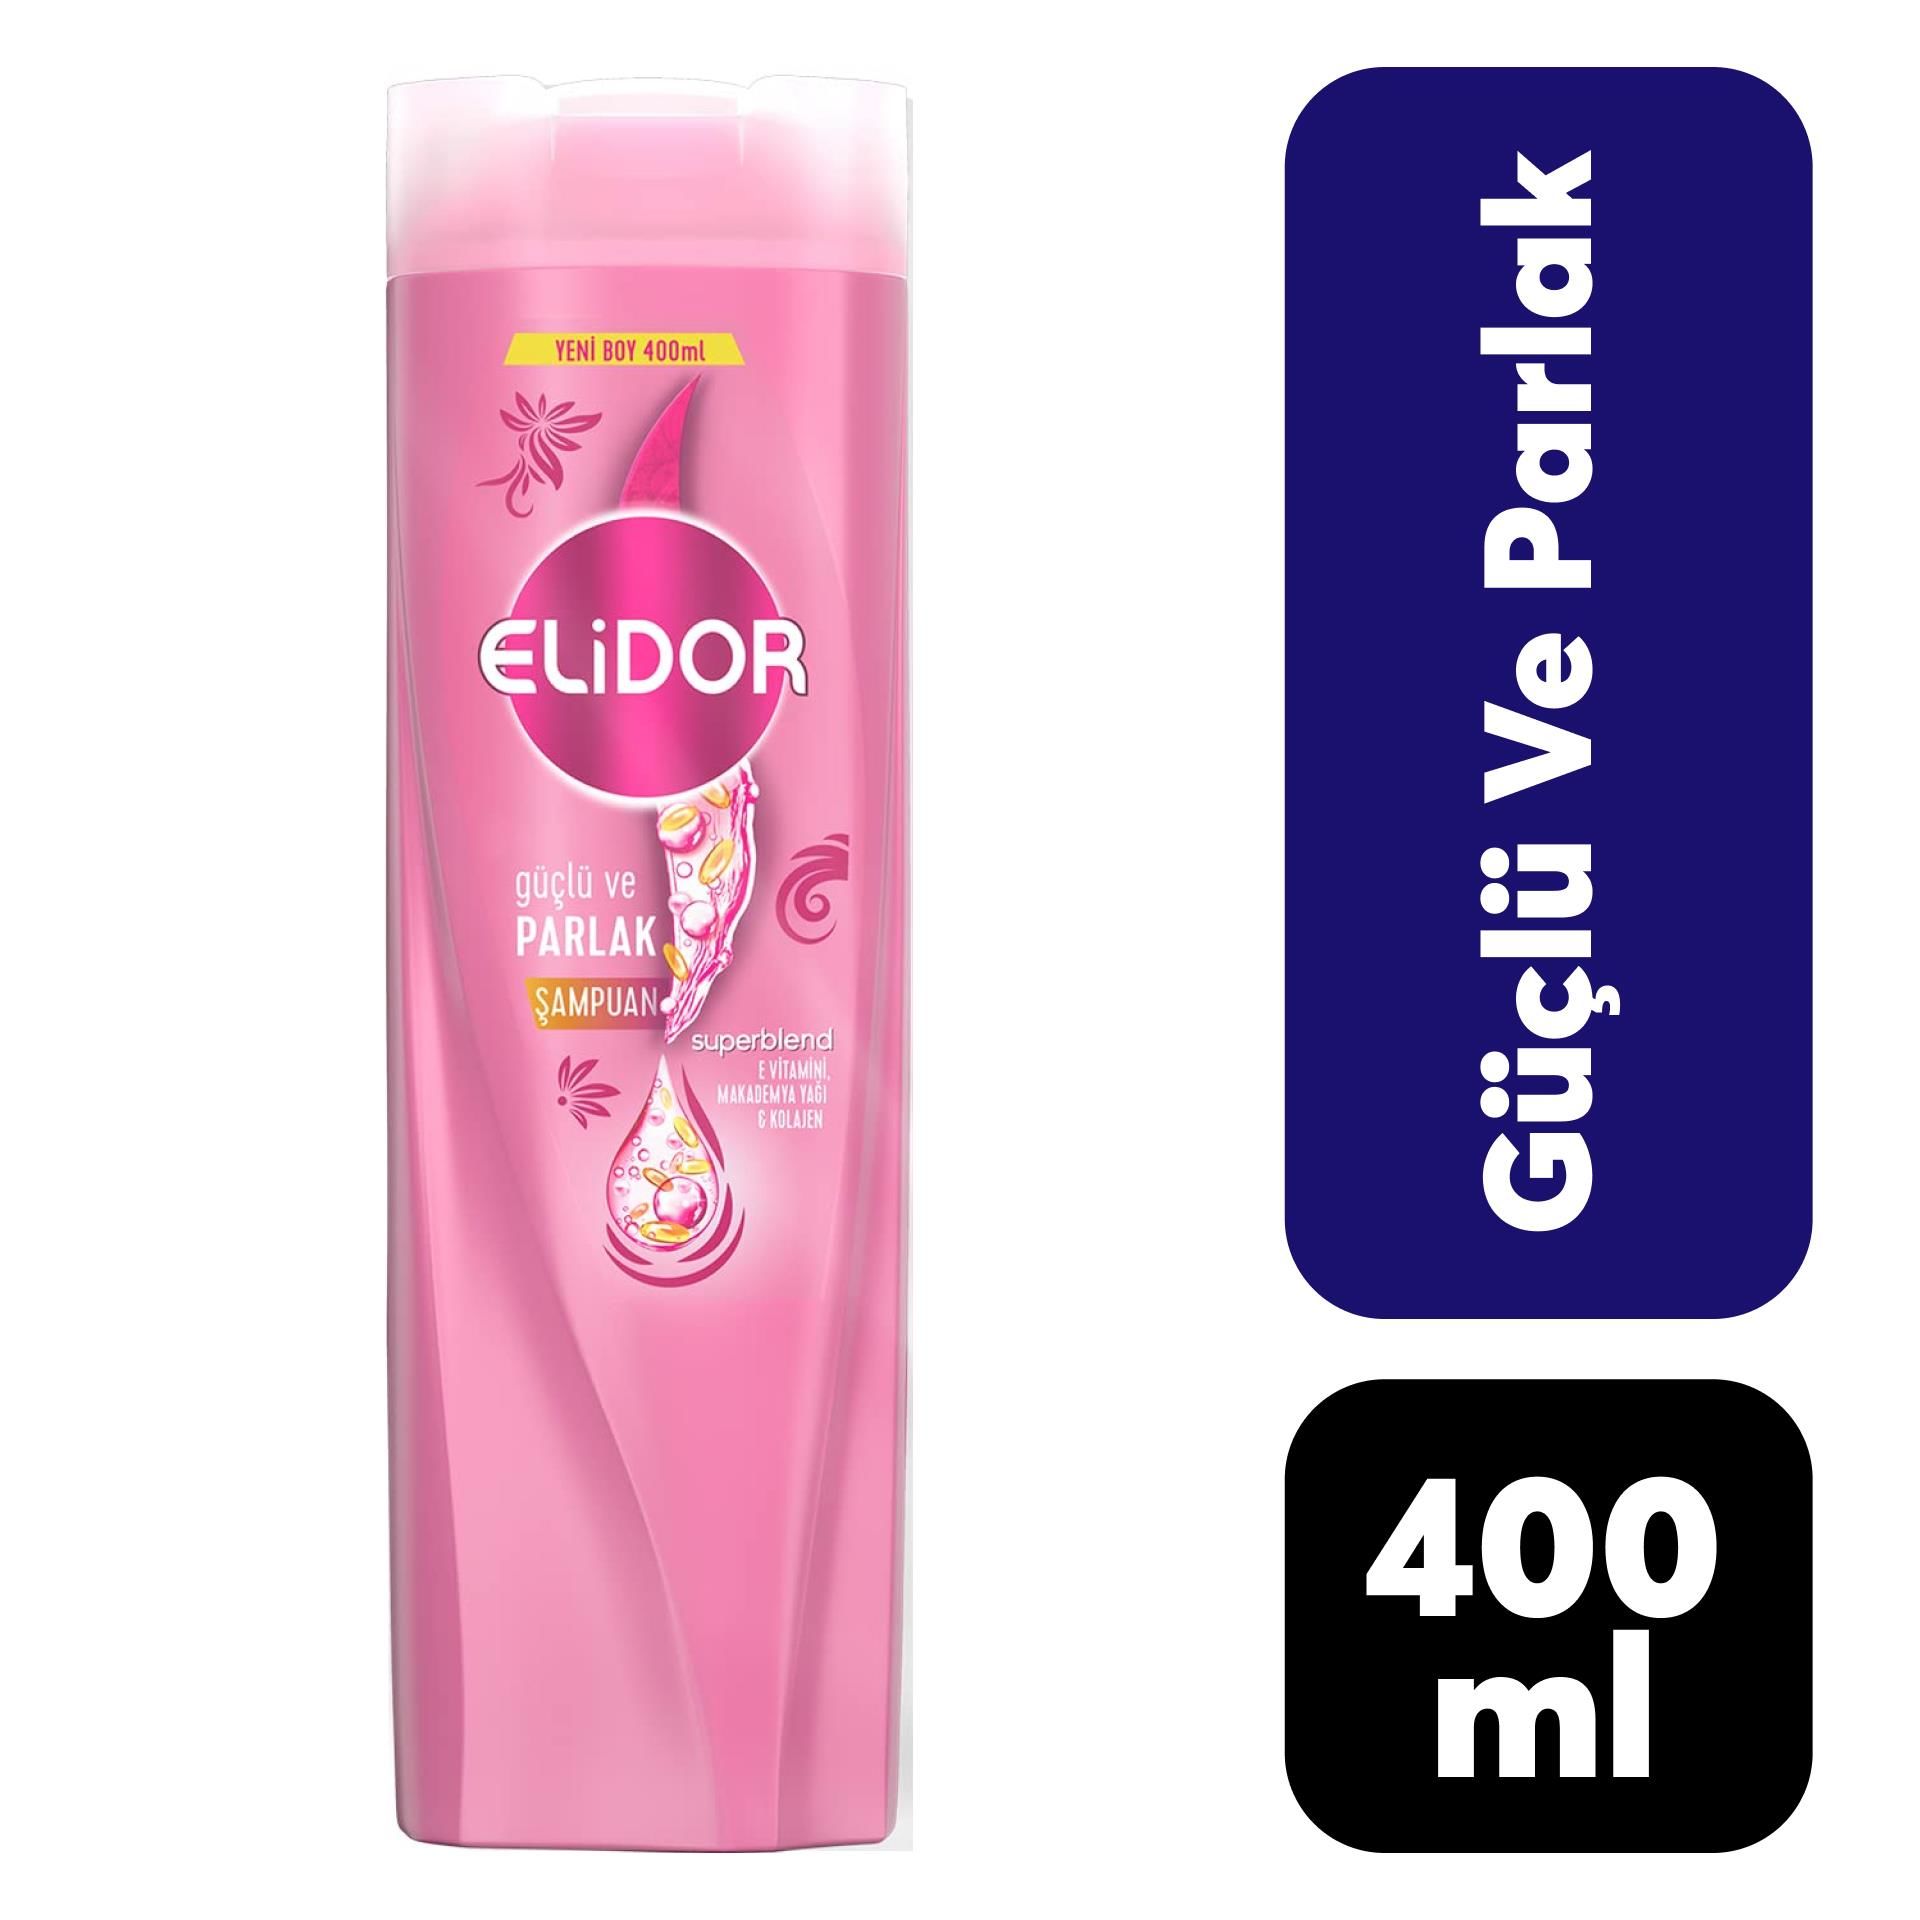 Elidor Şampuan 400 ml Güçlü ve Parlak